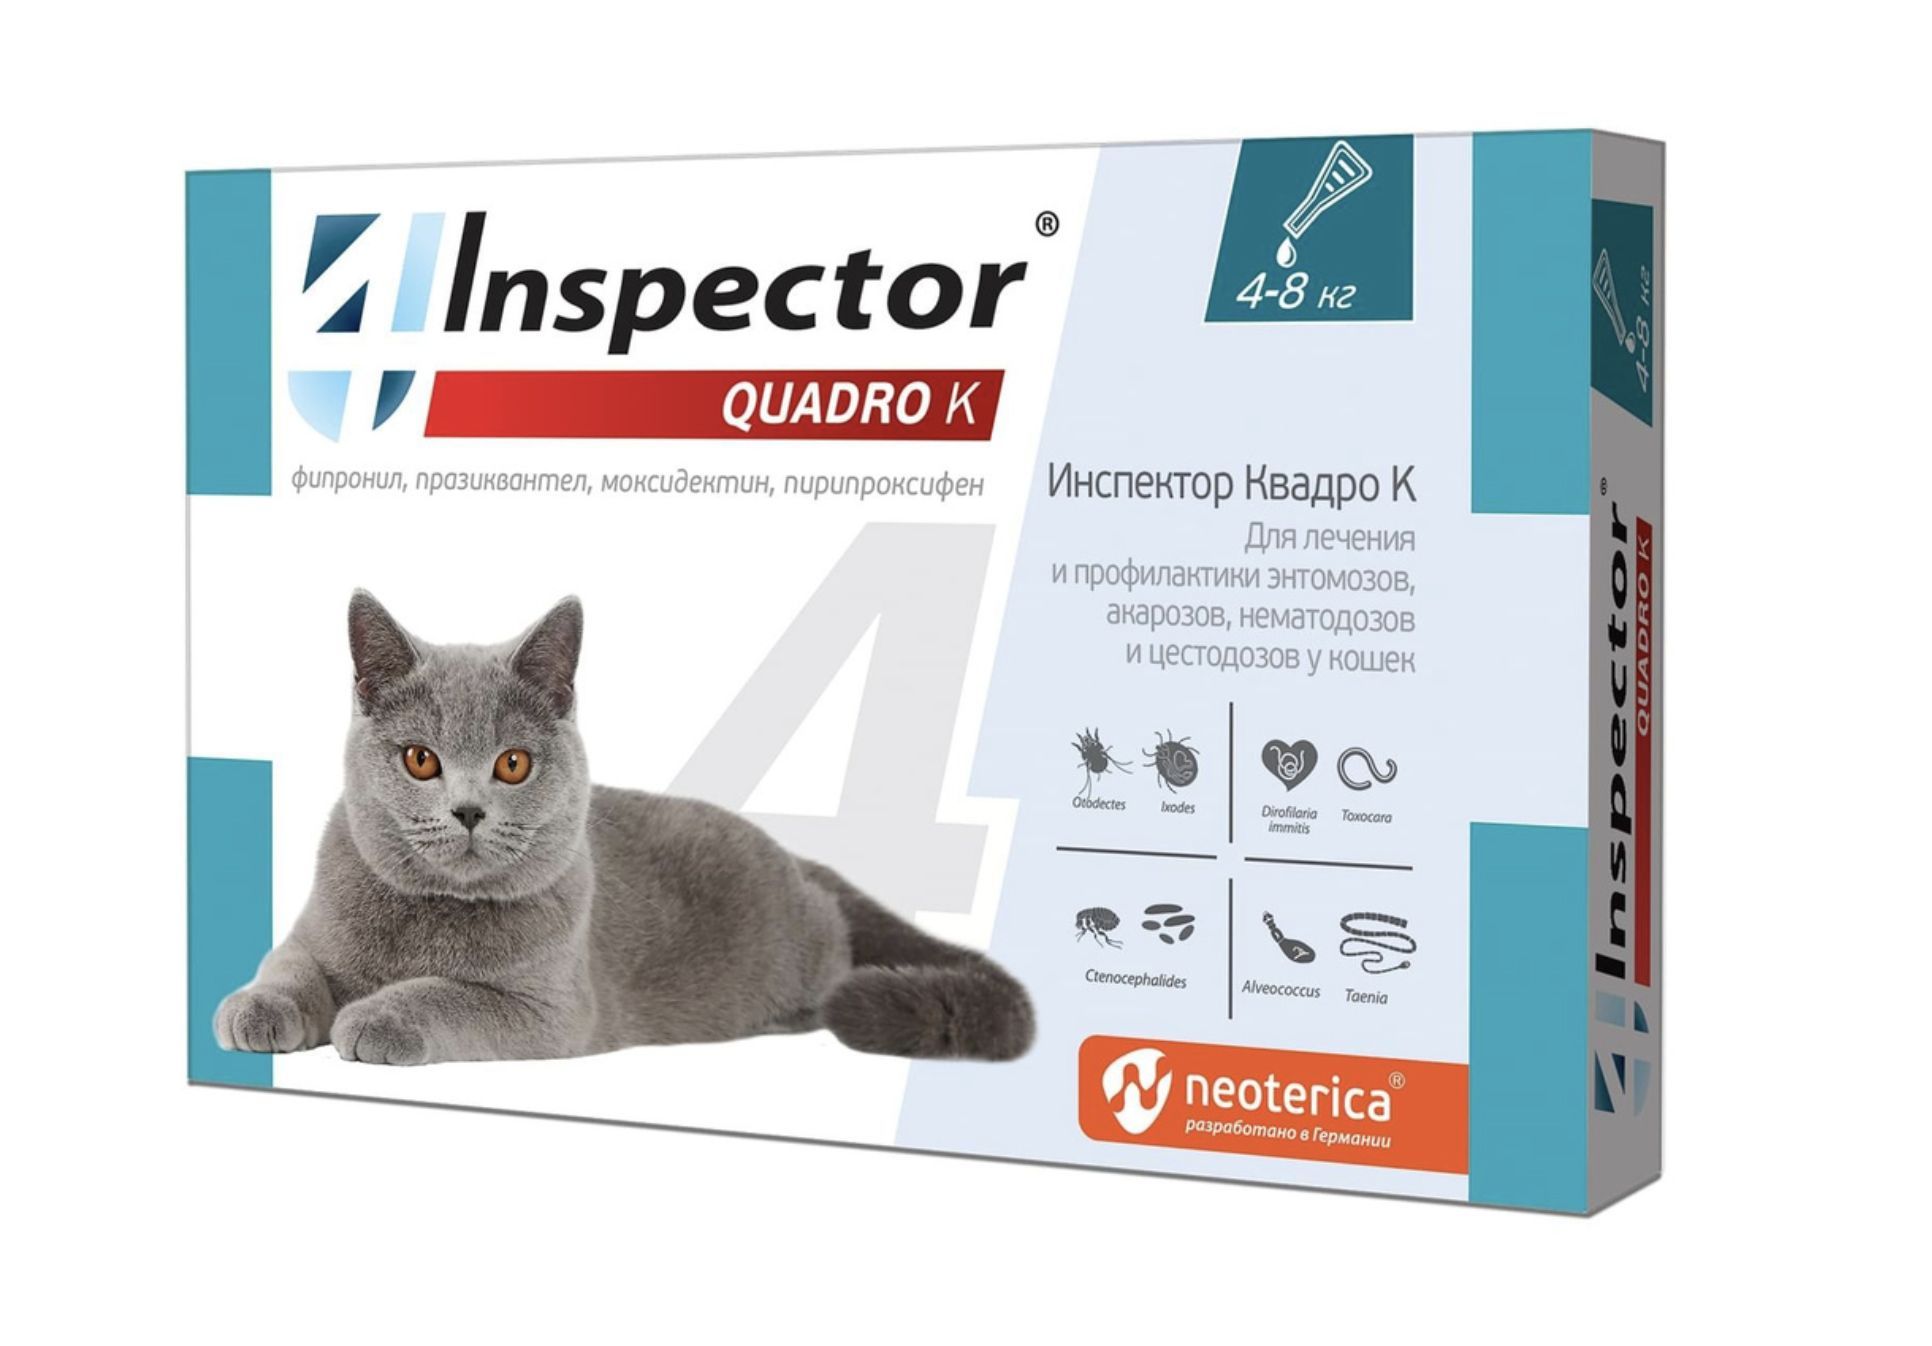 Inspector quadro tabs цены. Капли для кошек от блох и глистов Inspector. Инспектор Квадро капли для кошек. Инспектор капли для кошек 1-4 кг. Капли для кошек "Inspector Quadro" 1-4 кг от блох.